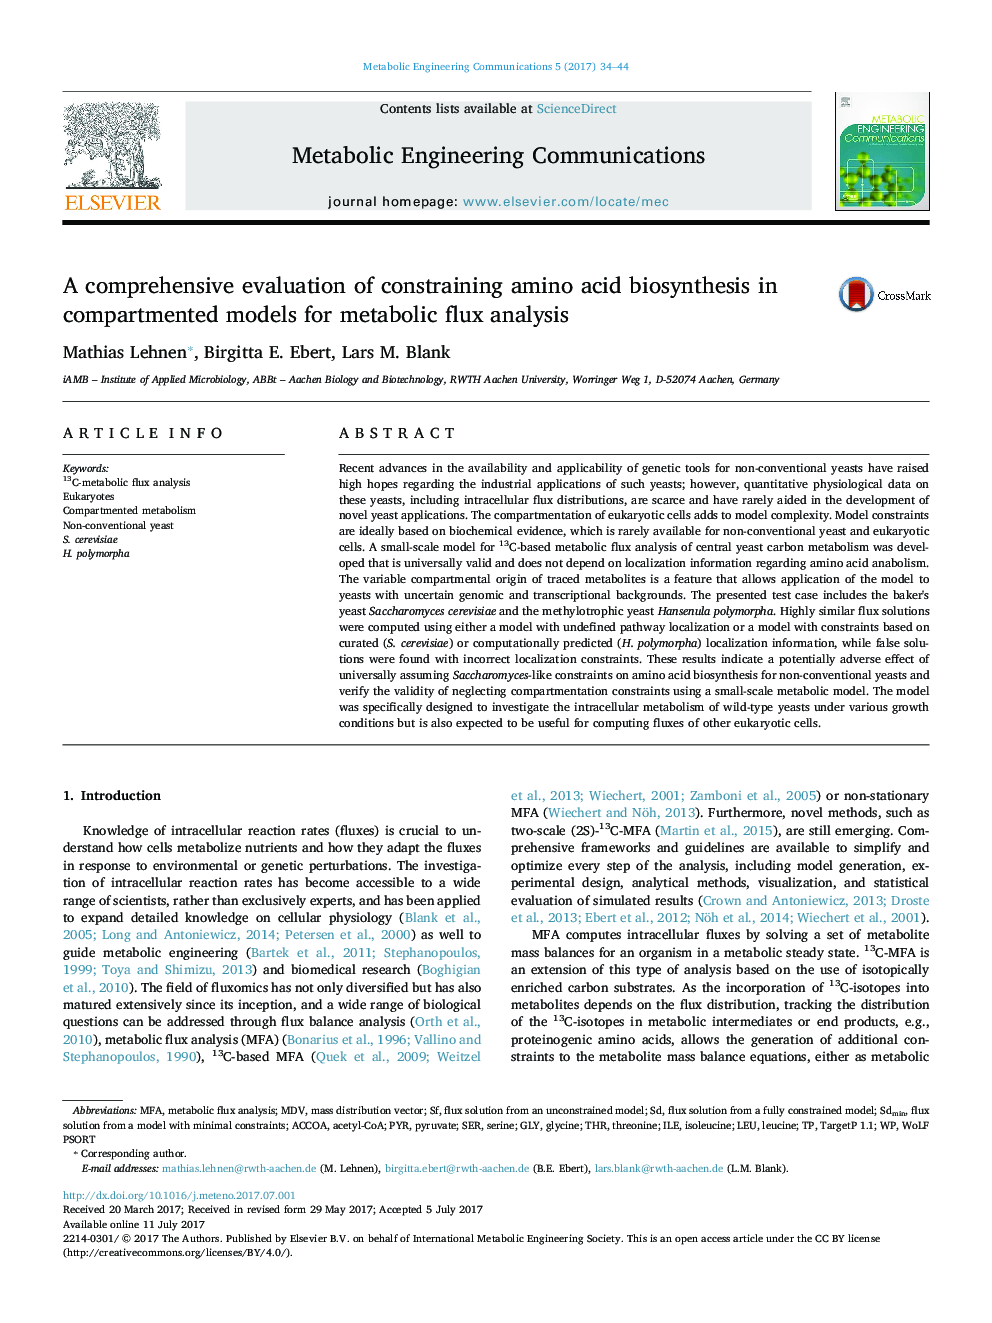 ارزیابی جامع از محدودیت بیوسنتز آمینو اسید در مدل های تقسیم شده برای تجزیه و تحلیل شار متابولیک 